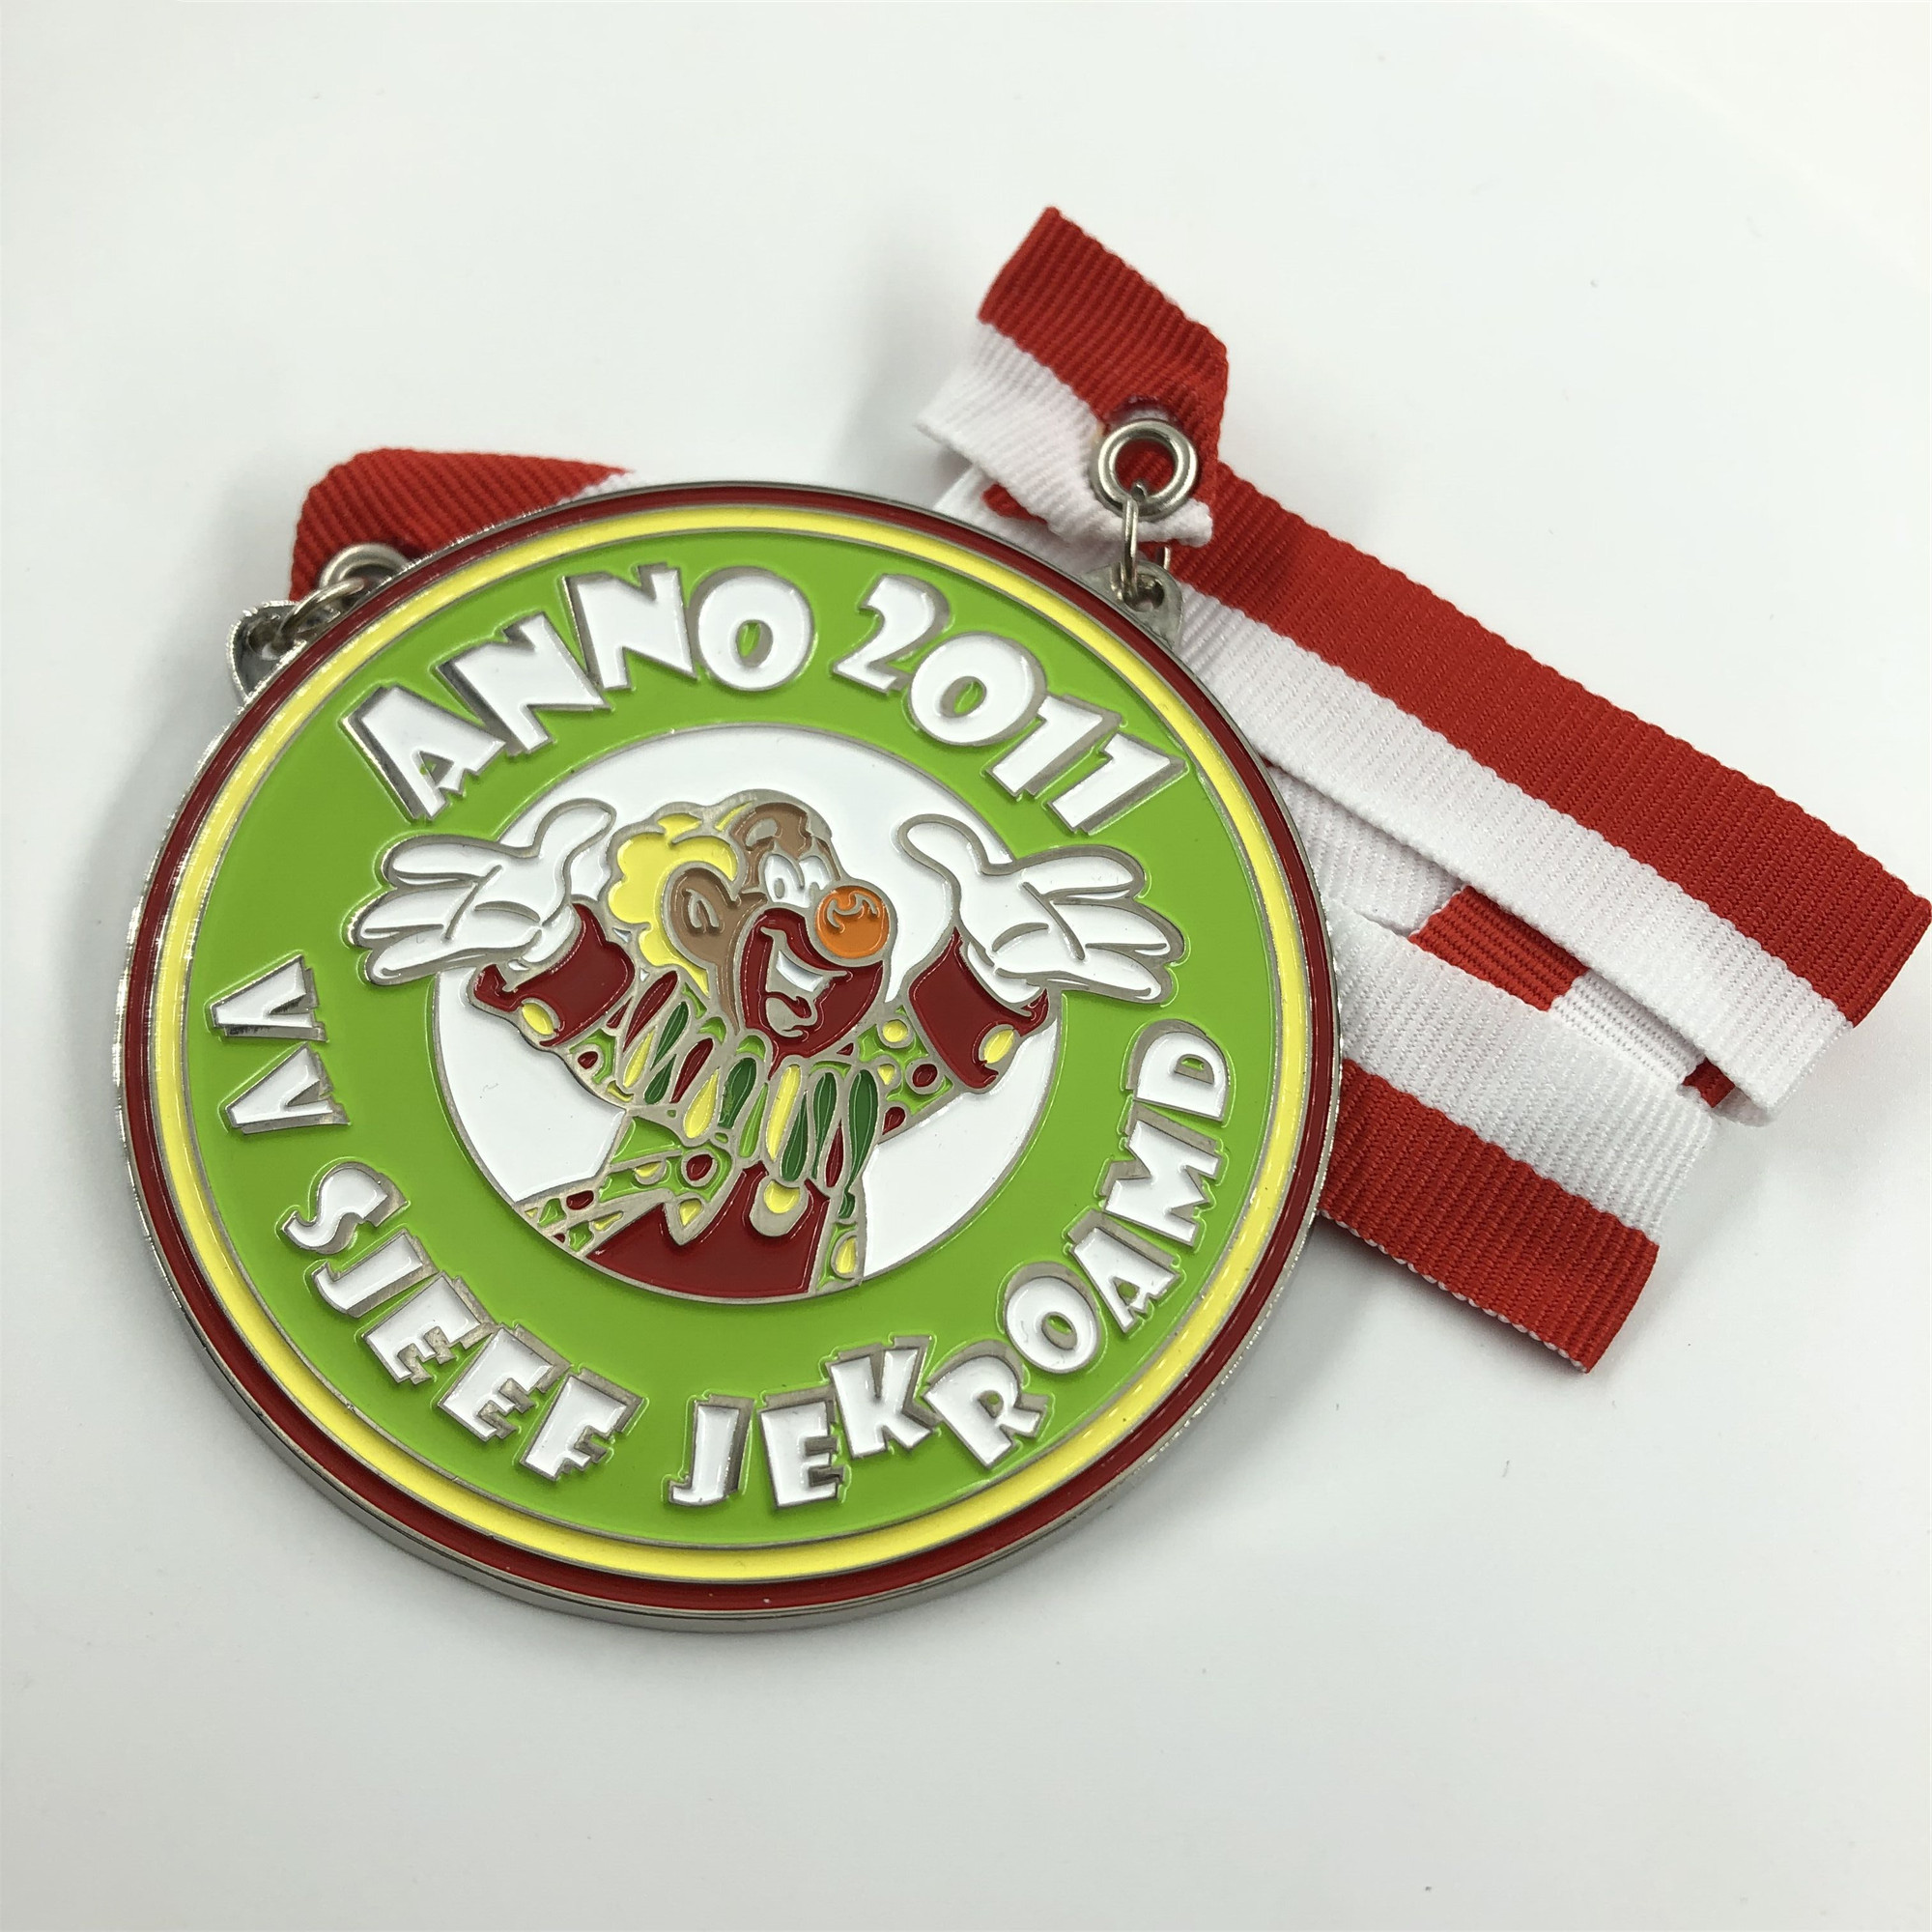  Hot Sale Product Soft Enamel Antique Brass Pig Shape Individuelle Karnevalsorden Medallion Zinc Alloy Medal